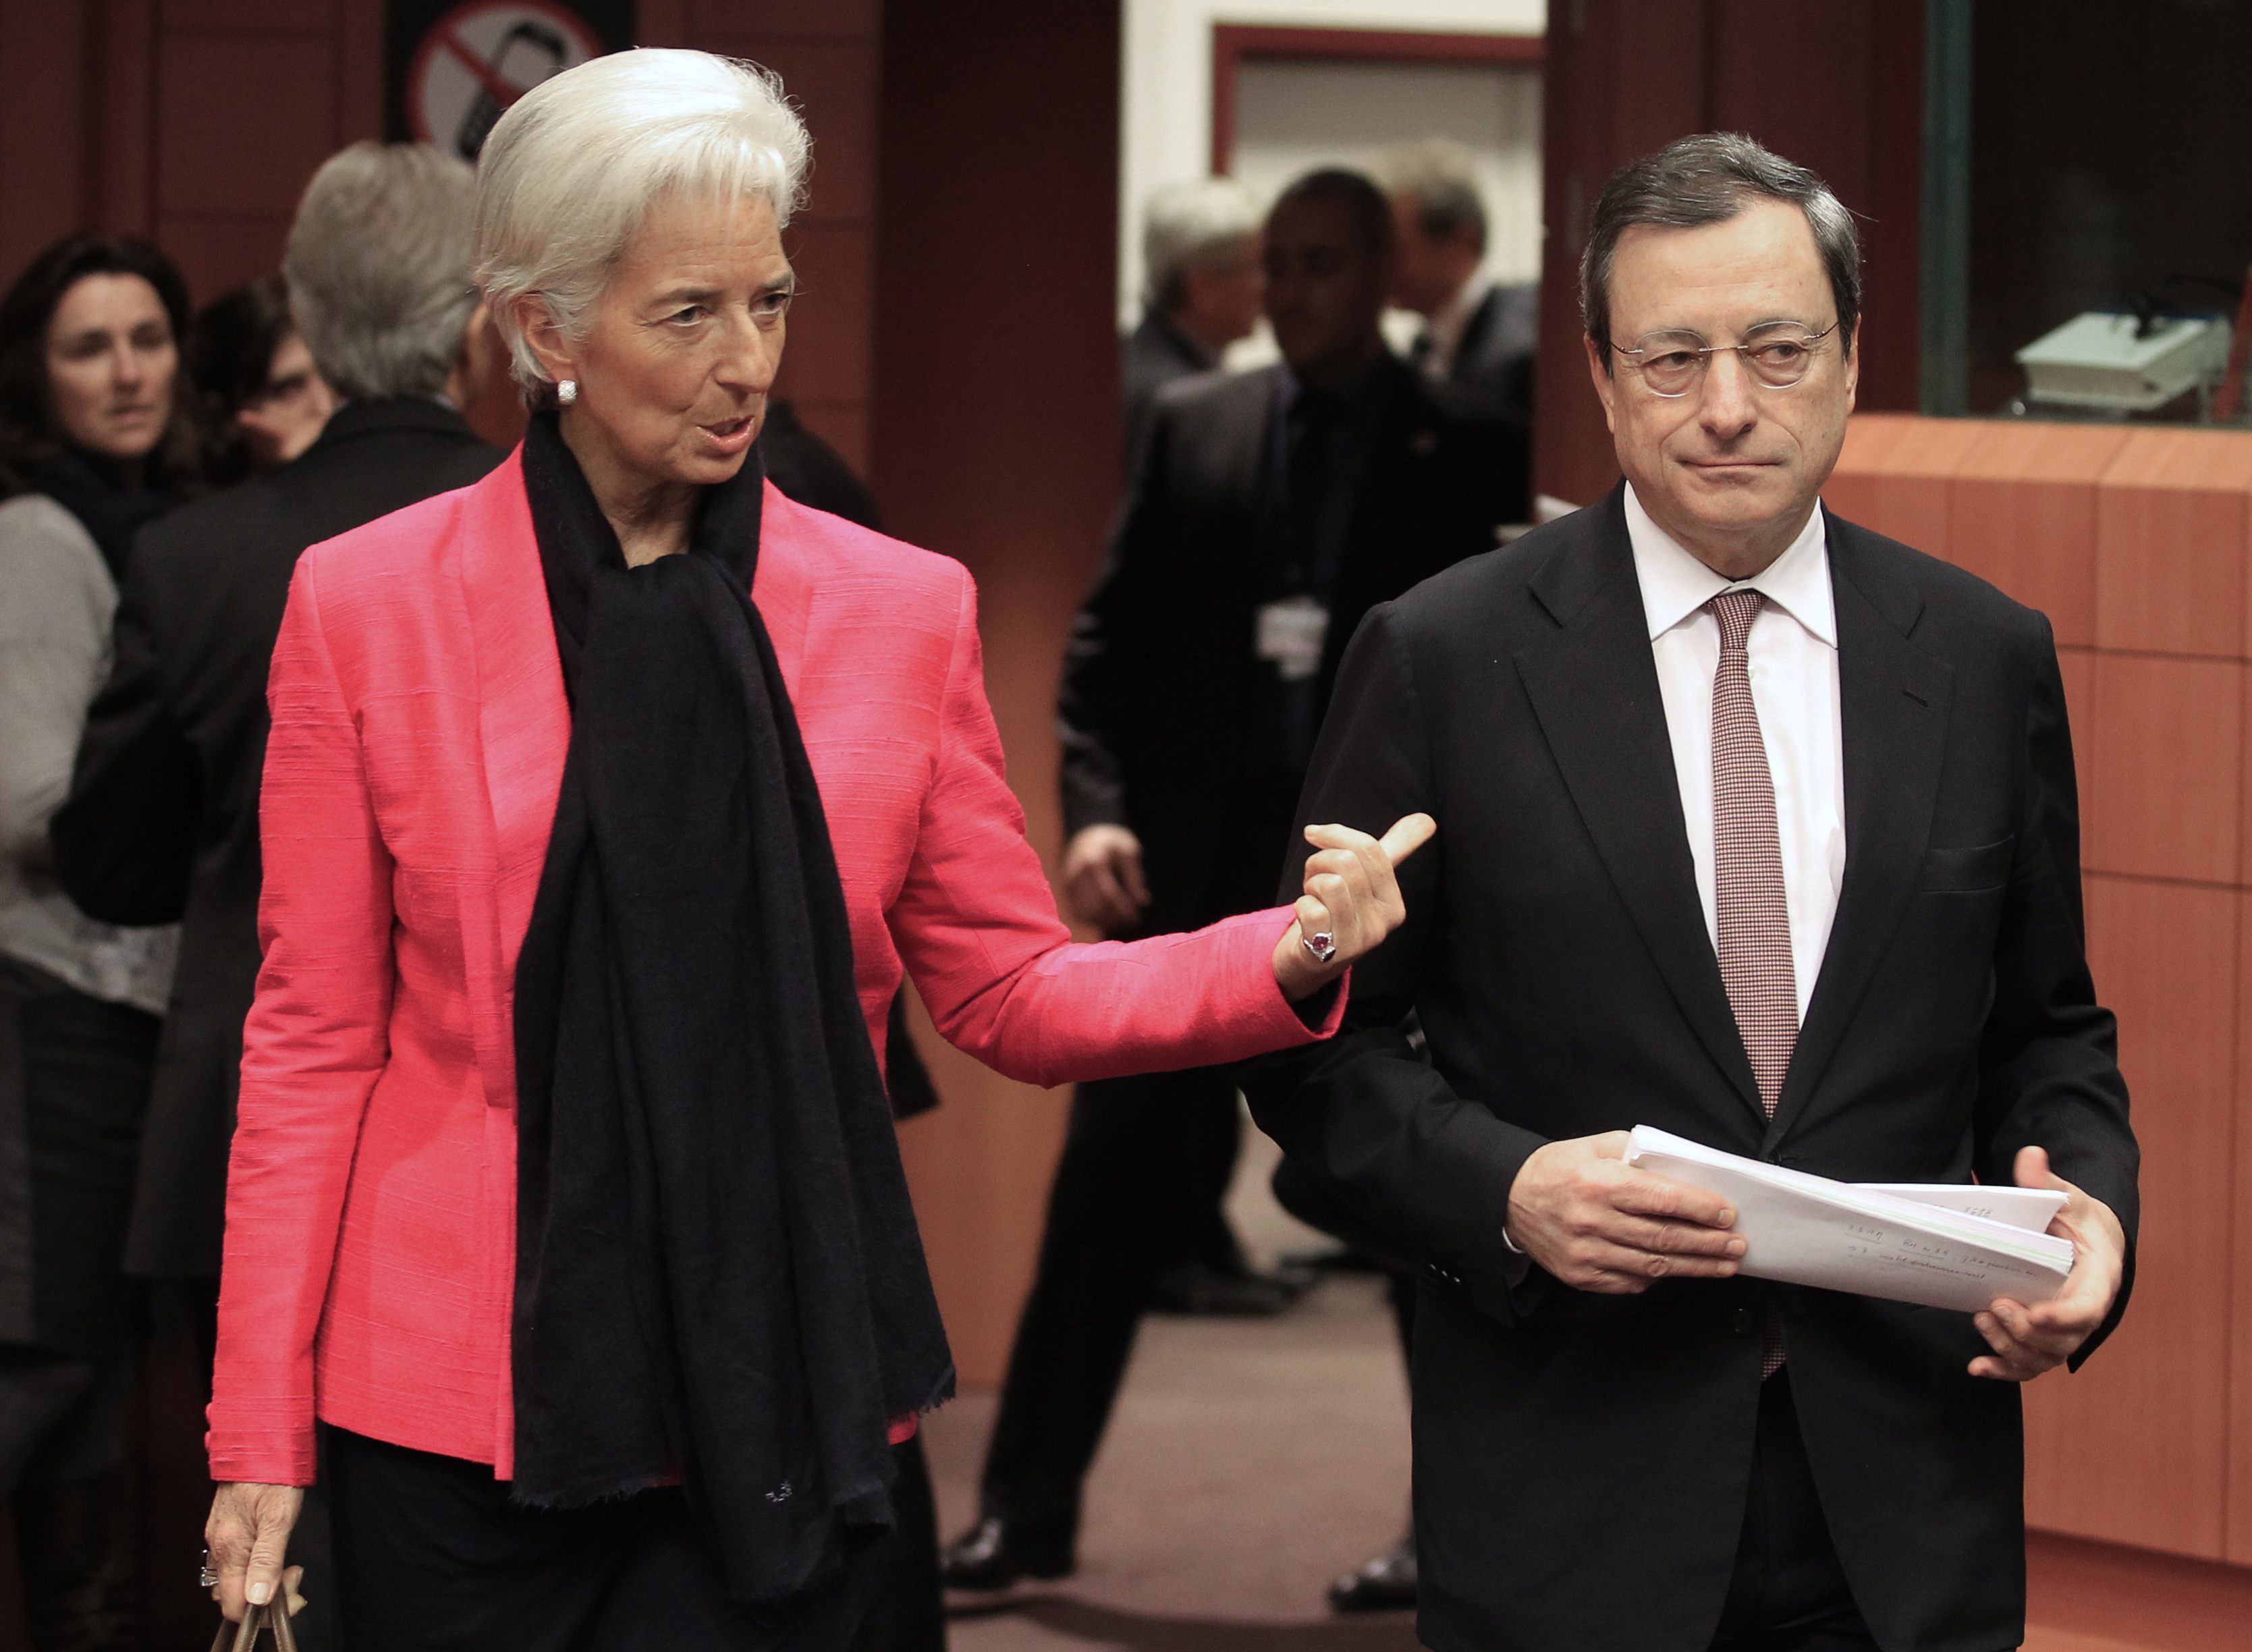 Έρχεται με λύση για την Ελλάδα η Λαγκάρντ – Πόσο κοντά σε συμβιβασμό είναι ΔΝΤ και Ευρώπη